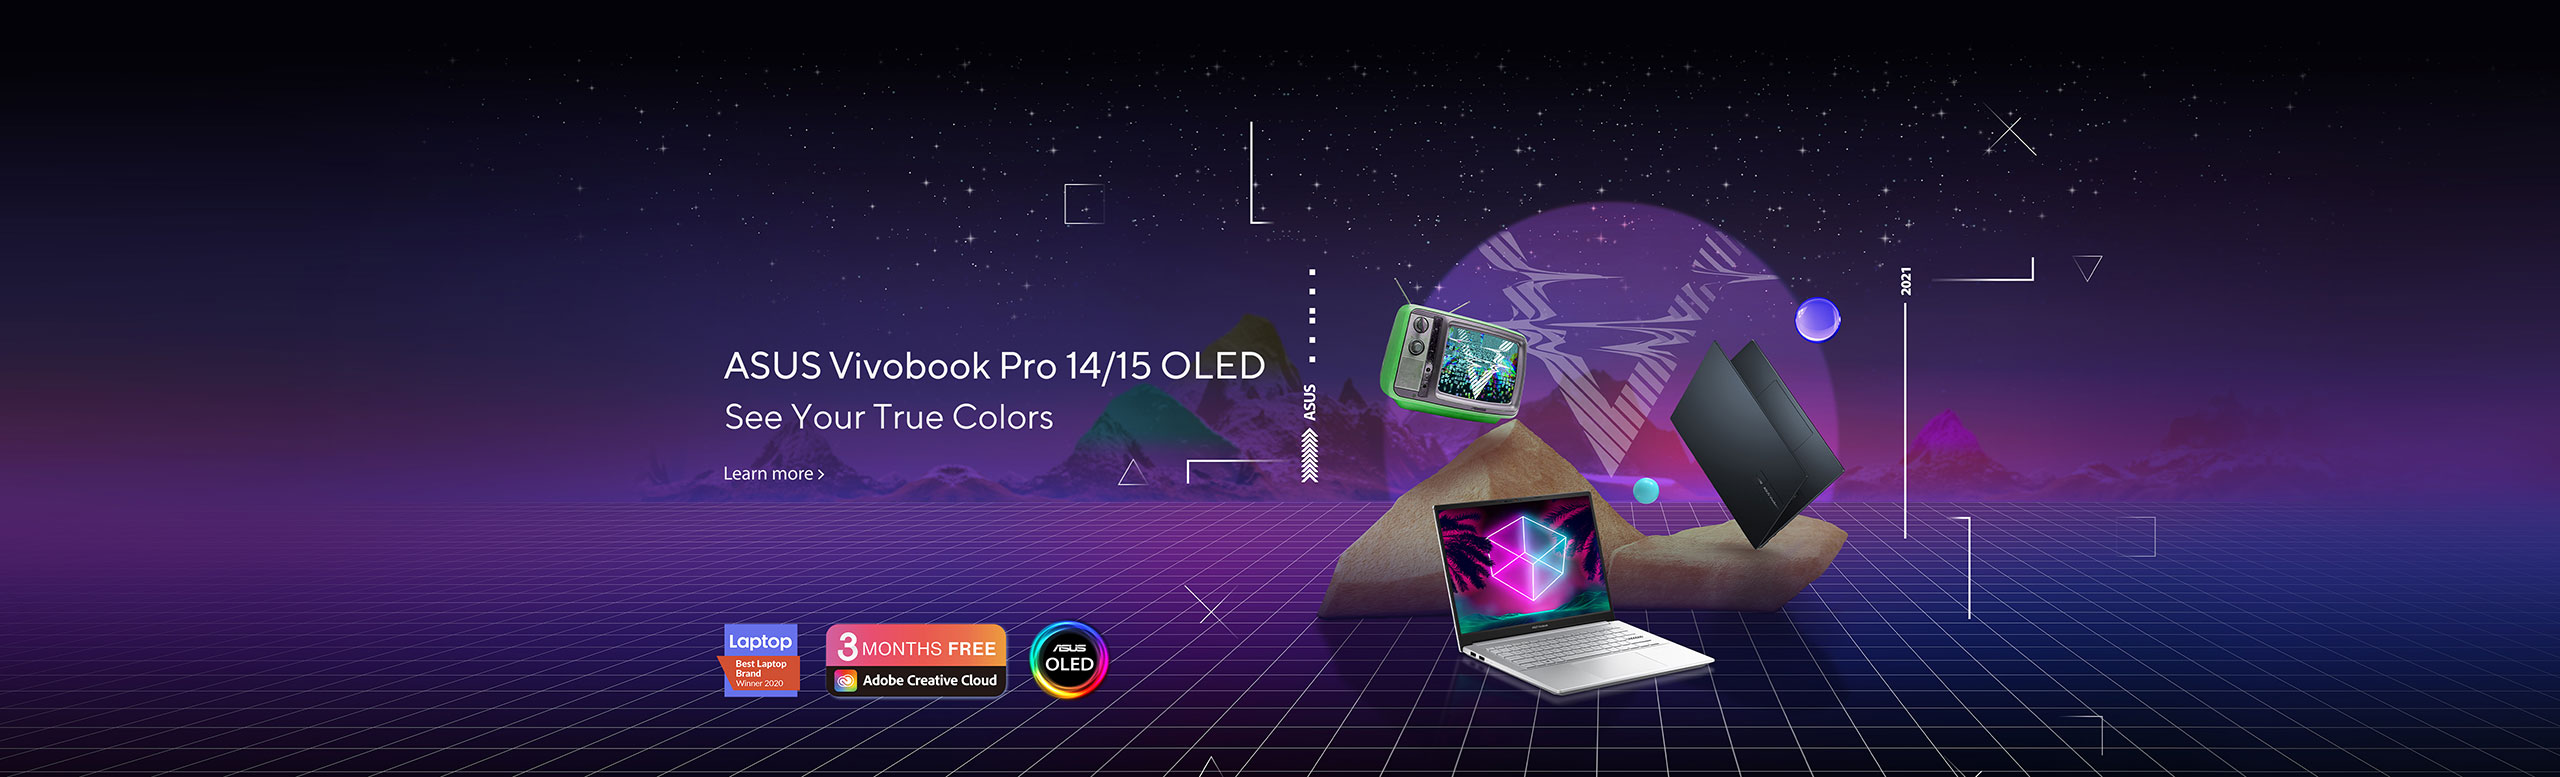 ASUS Vivobook Pro 14/15 OLED